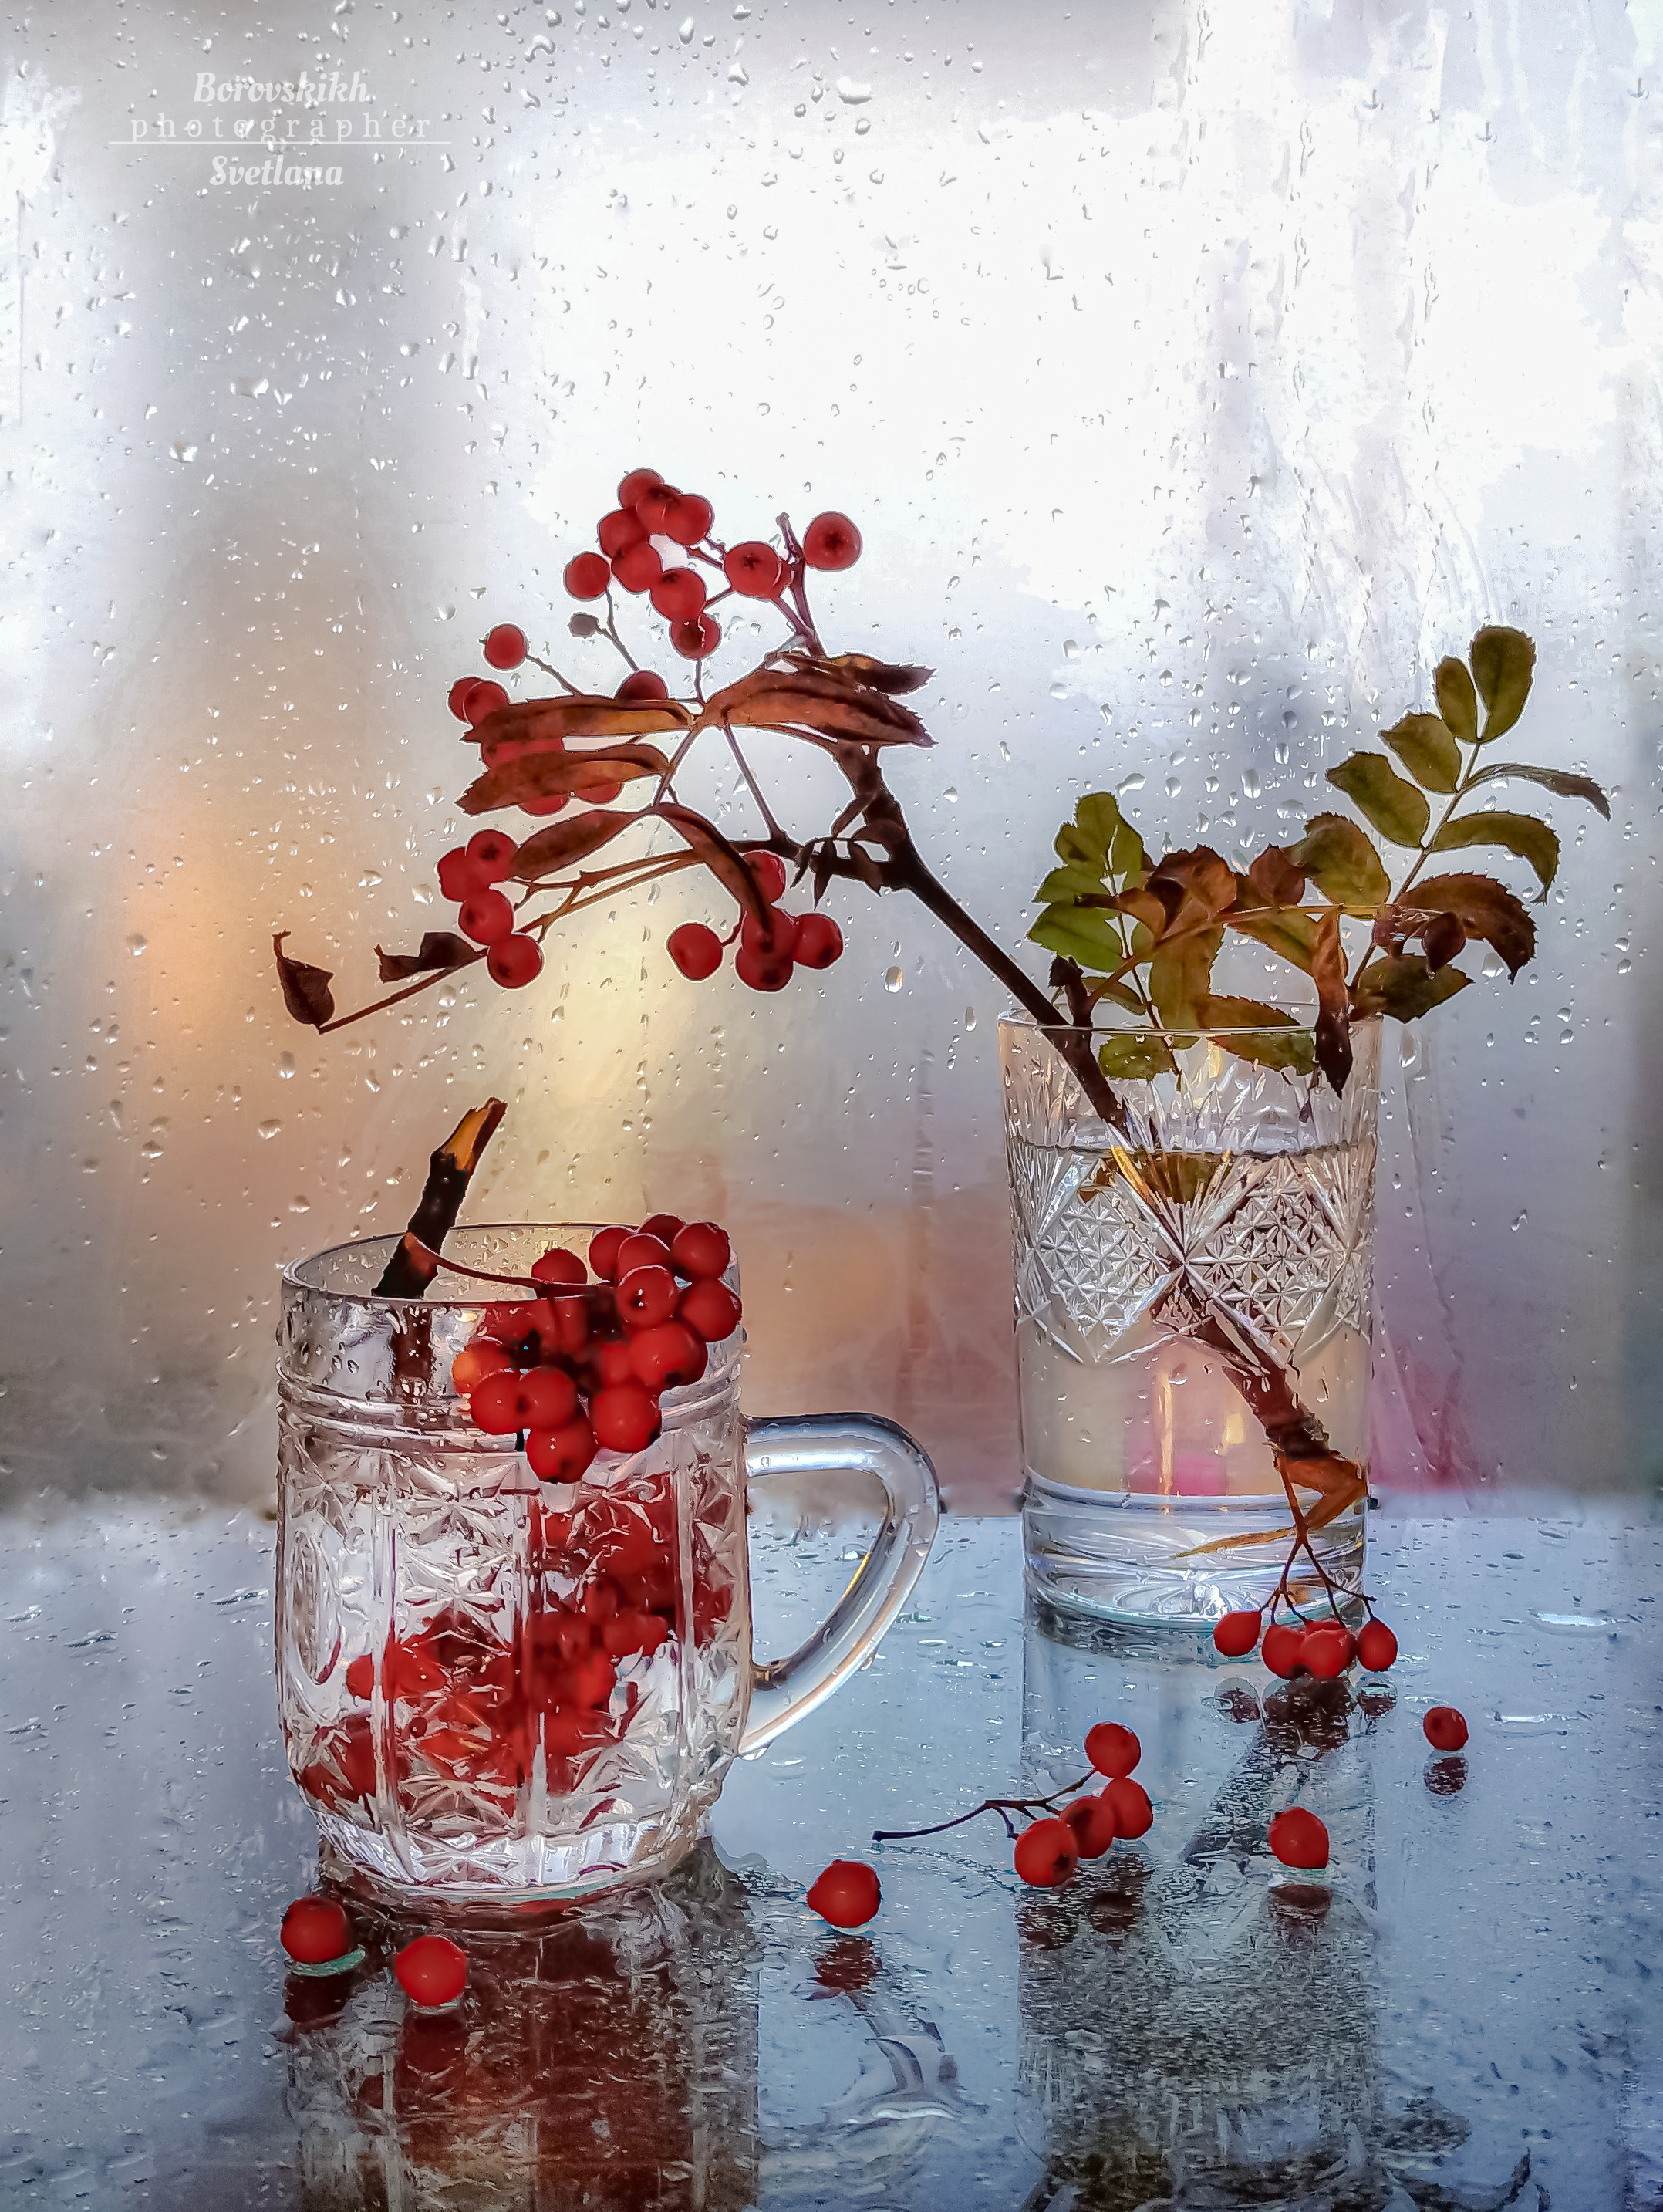 натюрморт, осень, ягода, рябина, полиэтилен, фото на окне, стекло, фото на телефон, закат, Светлана Боровских